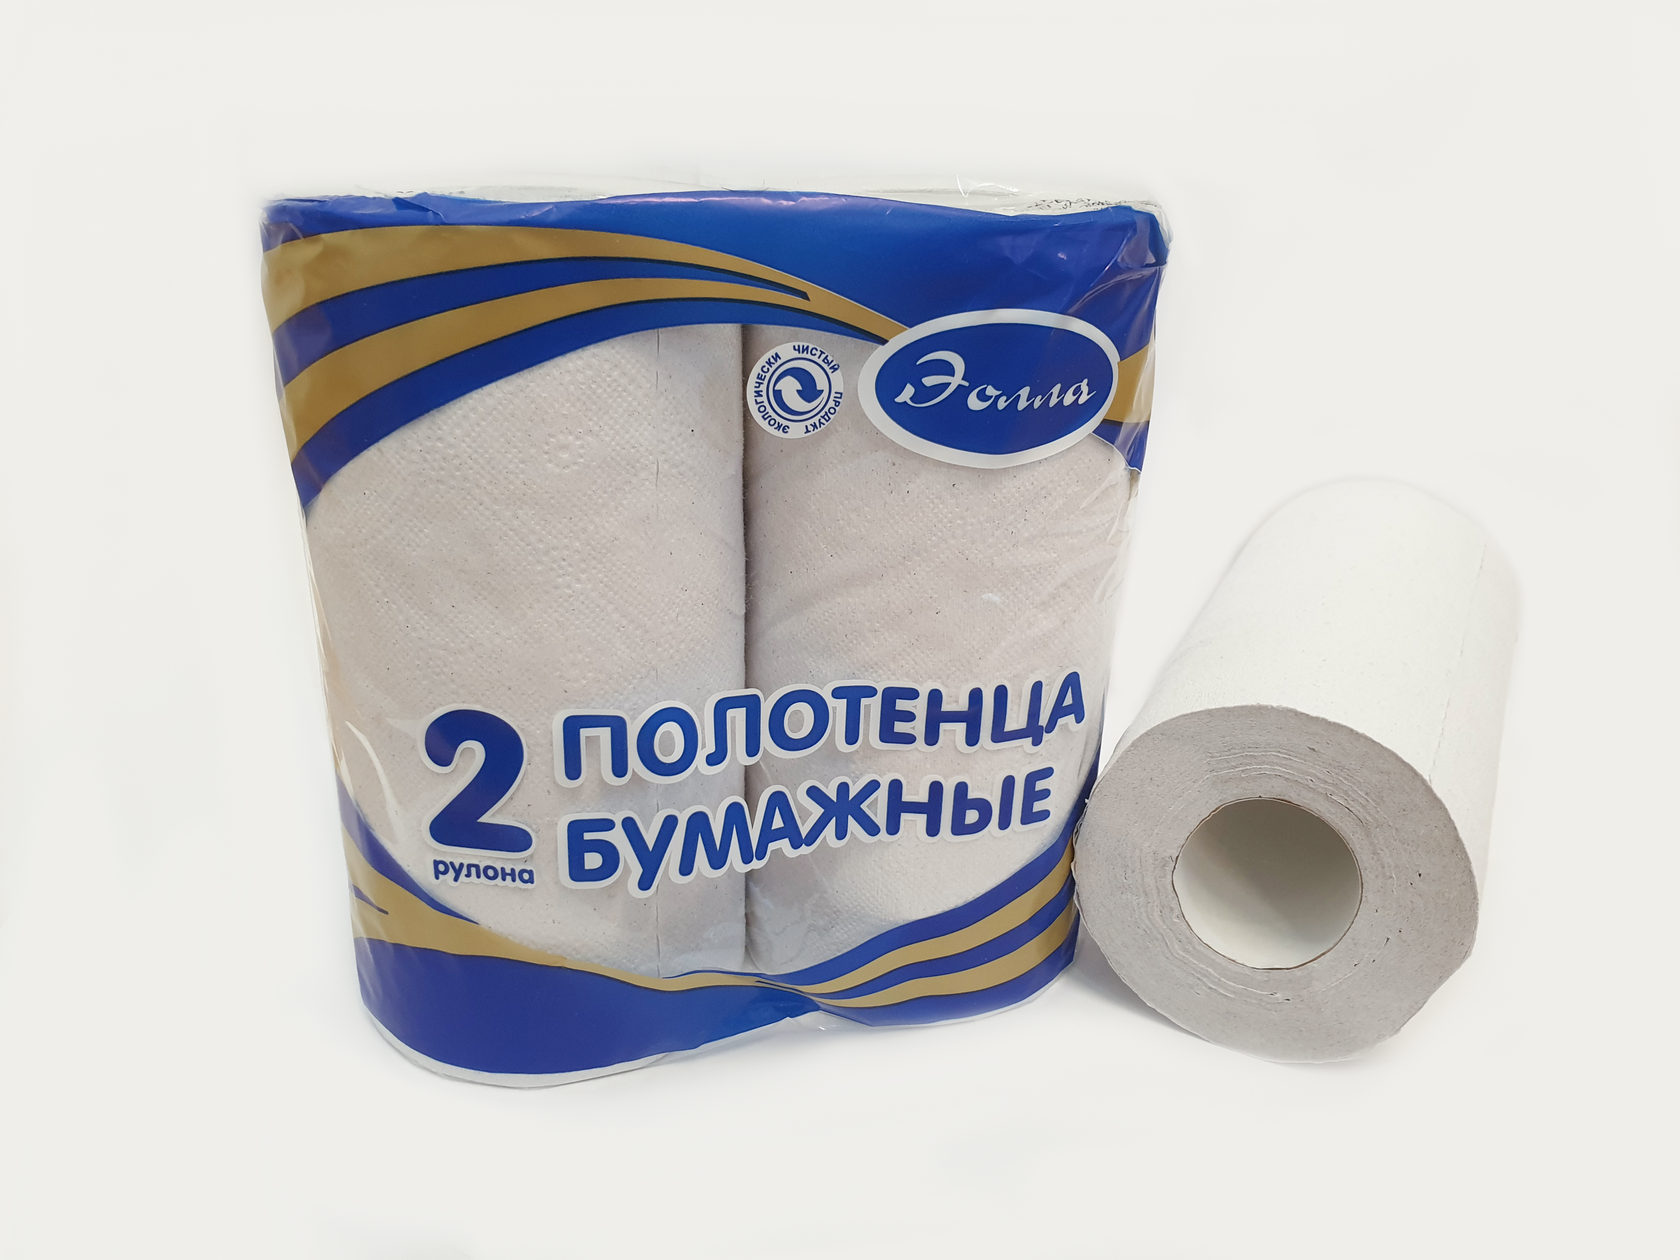 Моющие бумажные полотенца. Полотенце бумажное рулон 2сл. 10-18 М. ассорти. Уп (2)шт). Бумажные полотенца в рулонах. Полотенце в рулоне. Полотенца бумажные рулонные.